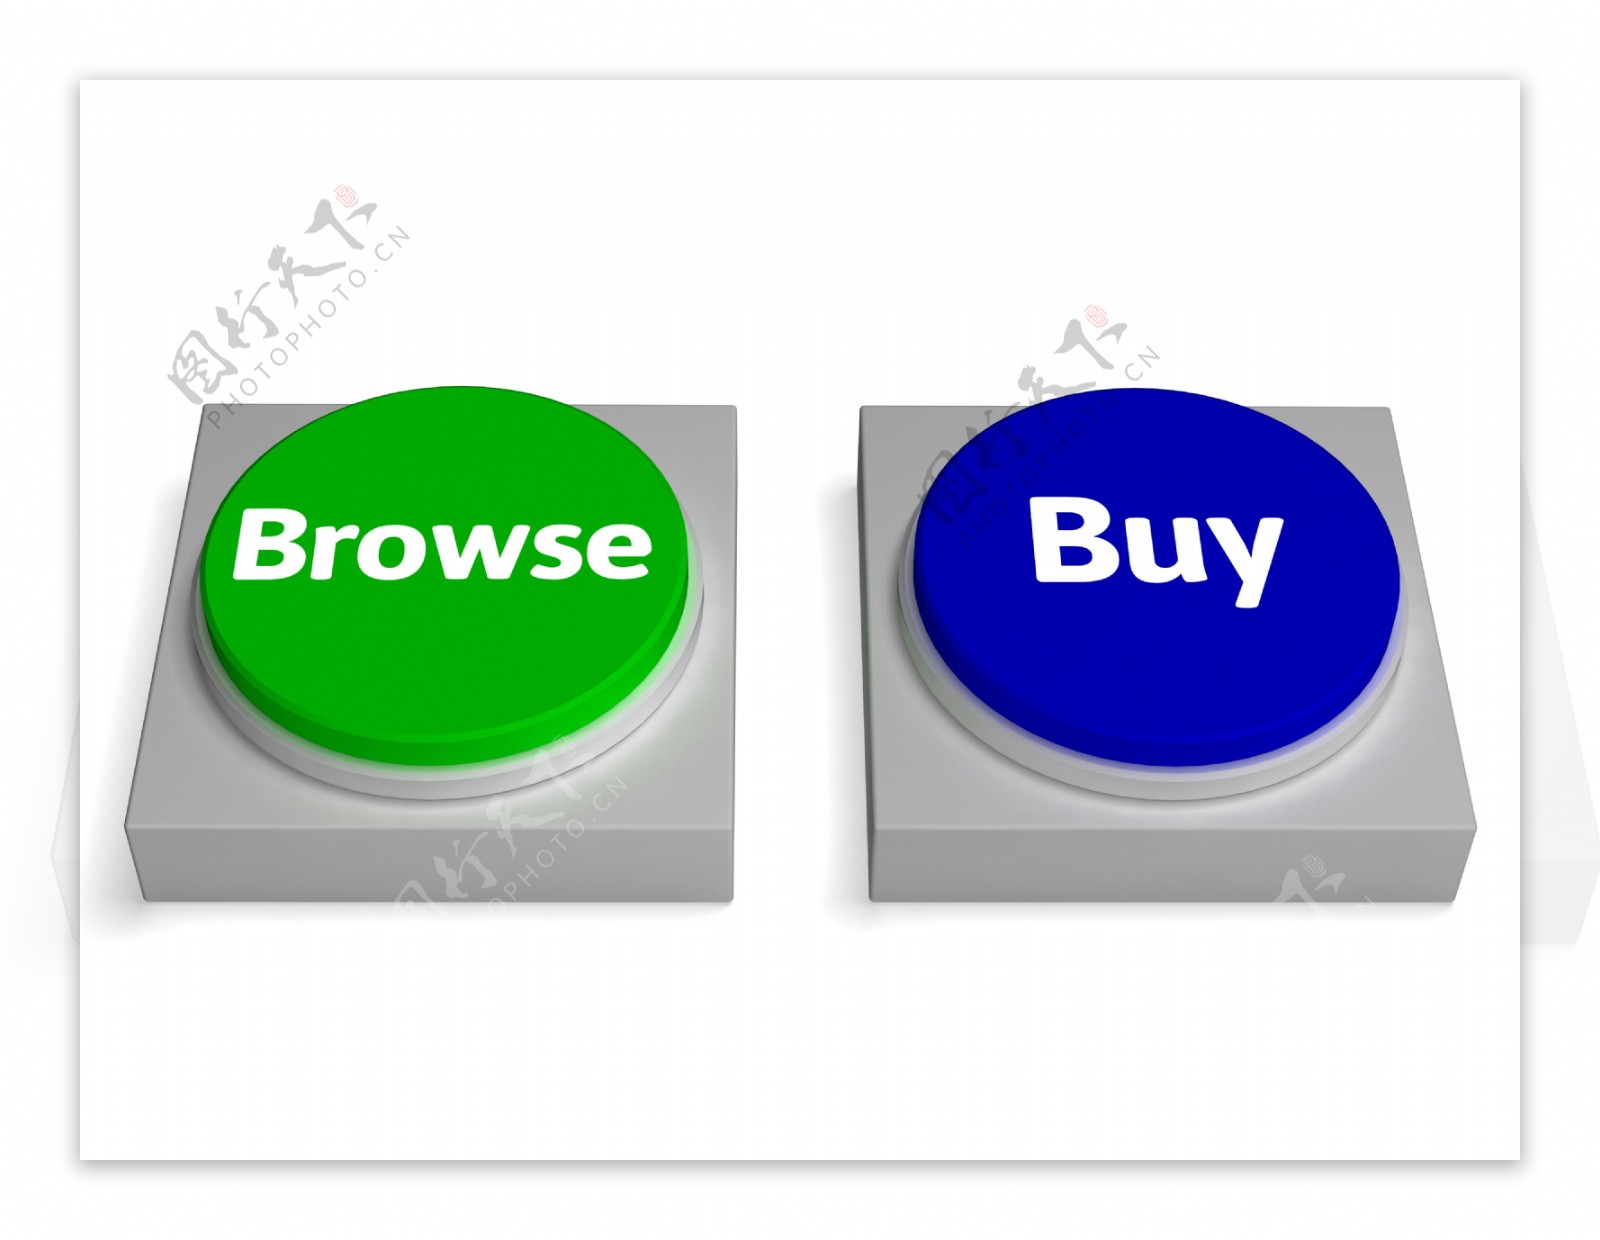 浏览购买按钮显示浏览或购买